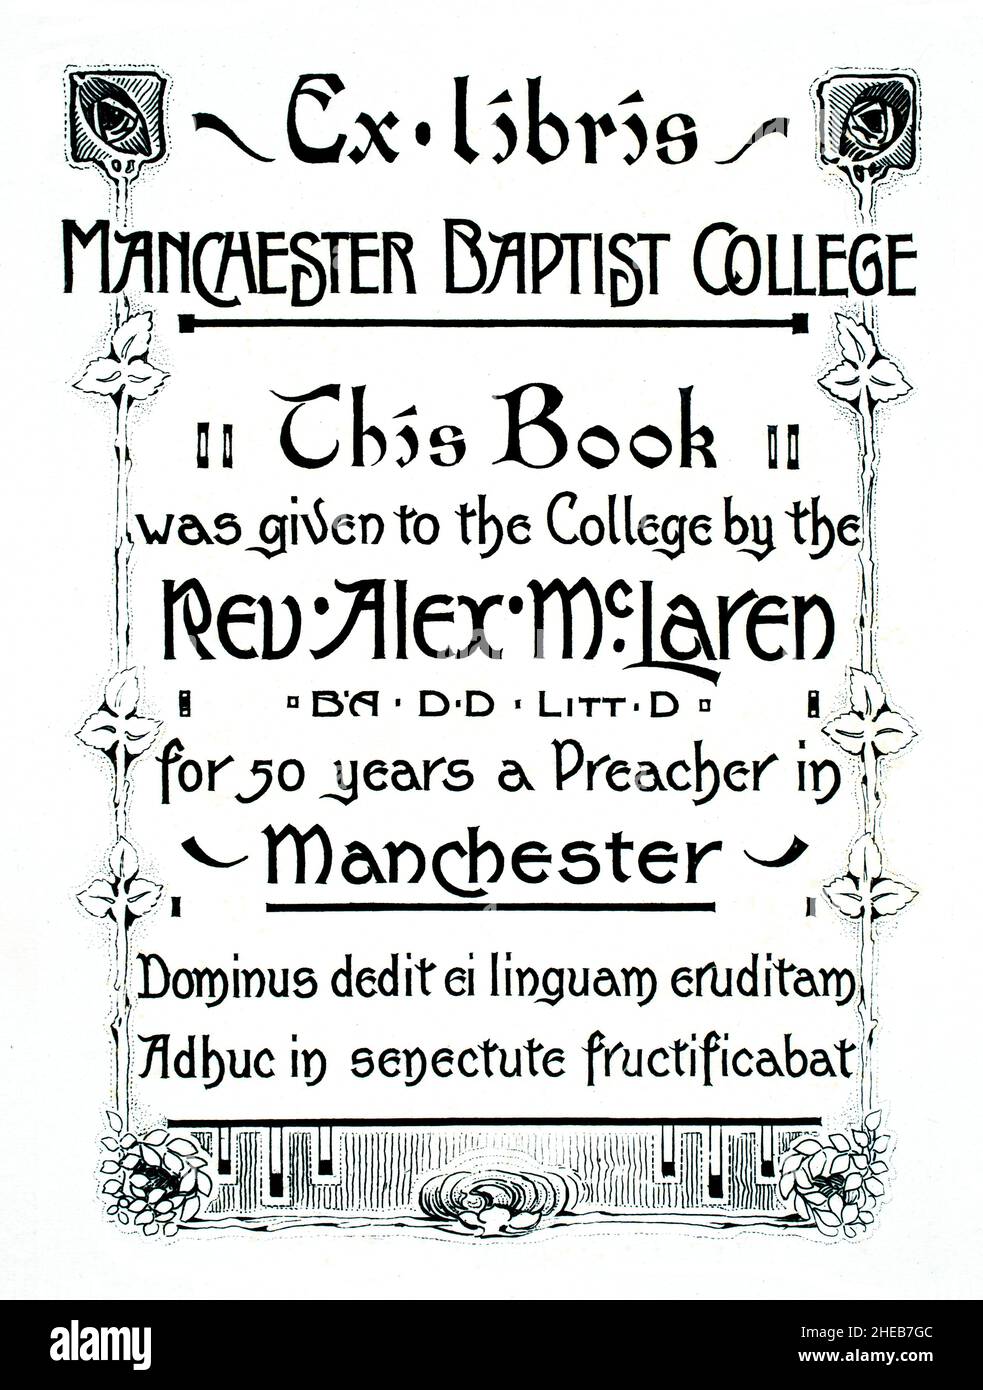 Exlibris im Jugendstil für Rev. Dr. Alex McLaren, überreicht an das Manchester Baptist College, um 50 Jahre Prediger zu feiern Stockfoto